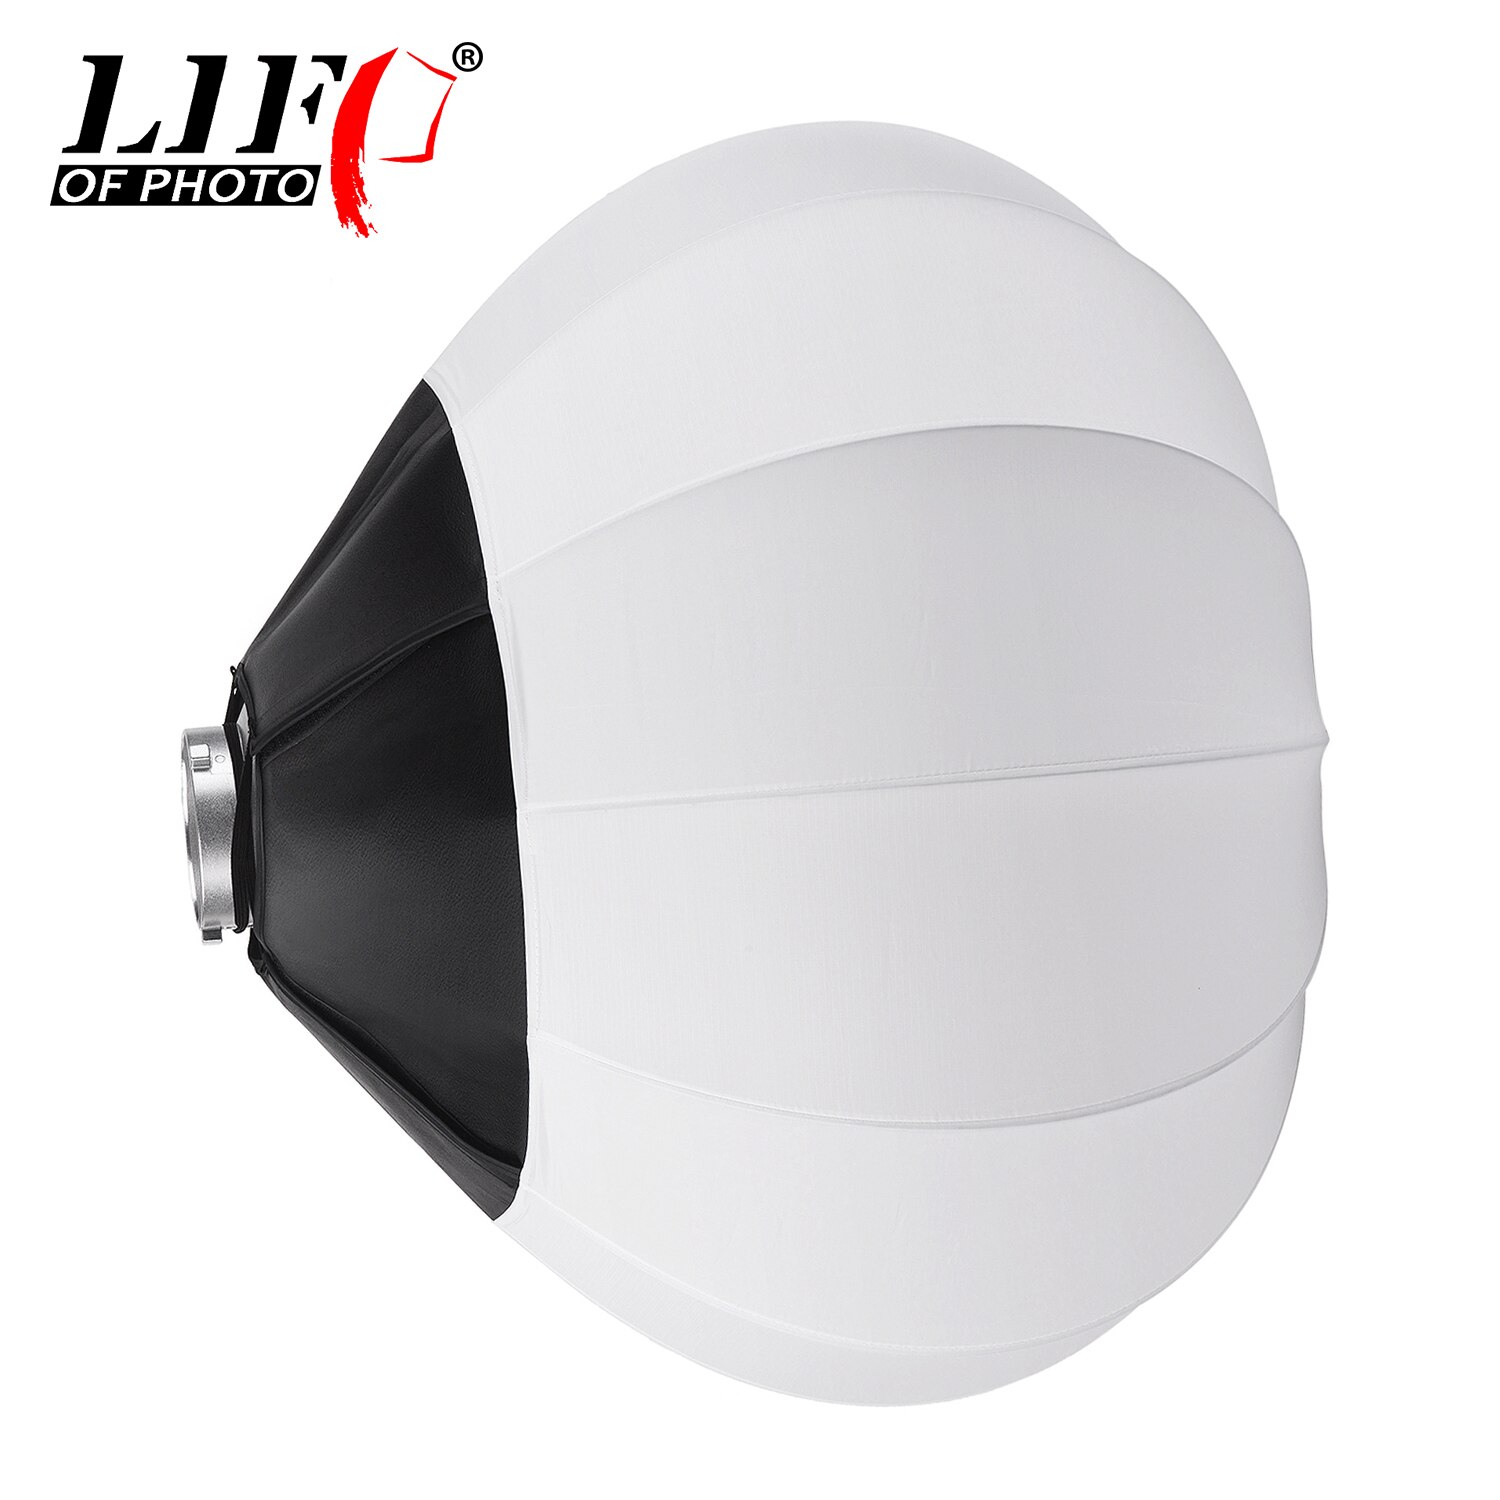 Liv af foto 65cm/ 25.6in lanterne stil sammenklappelig softbox belysning modifikatorer rund form kugleformet blød boks lys tilbehør